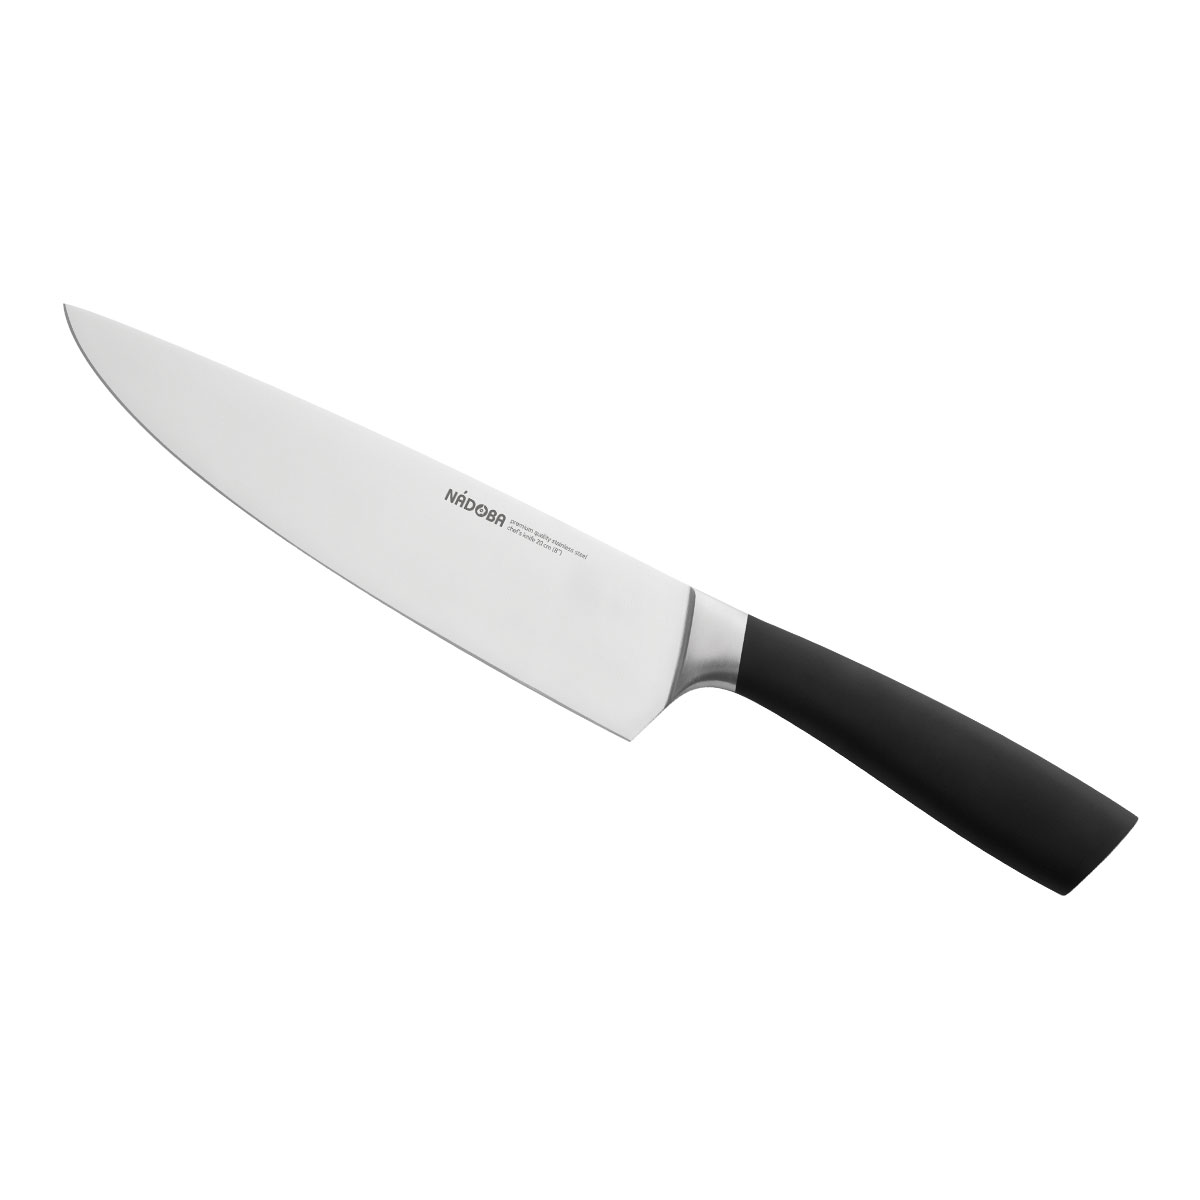 Нож Nadoba поварской 723910, 20 см нож поварской nadoba jana 20 см 723110